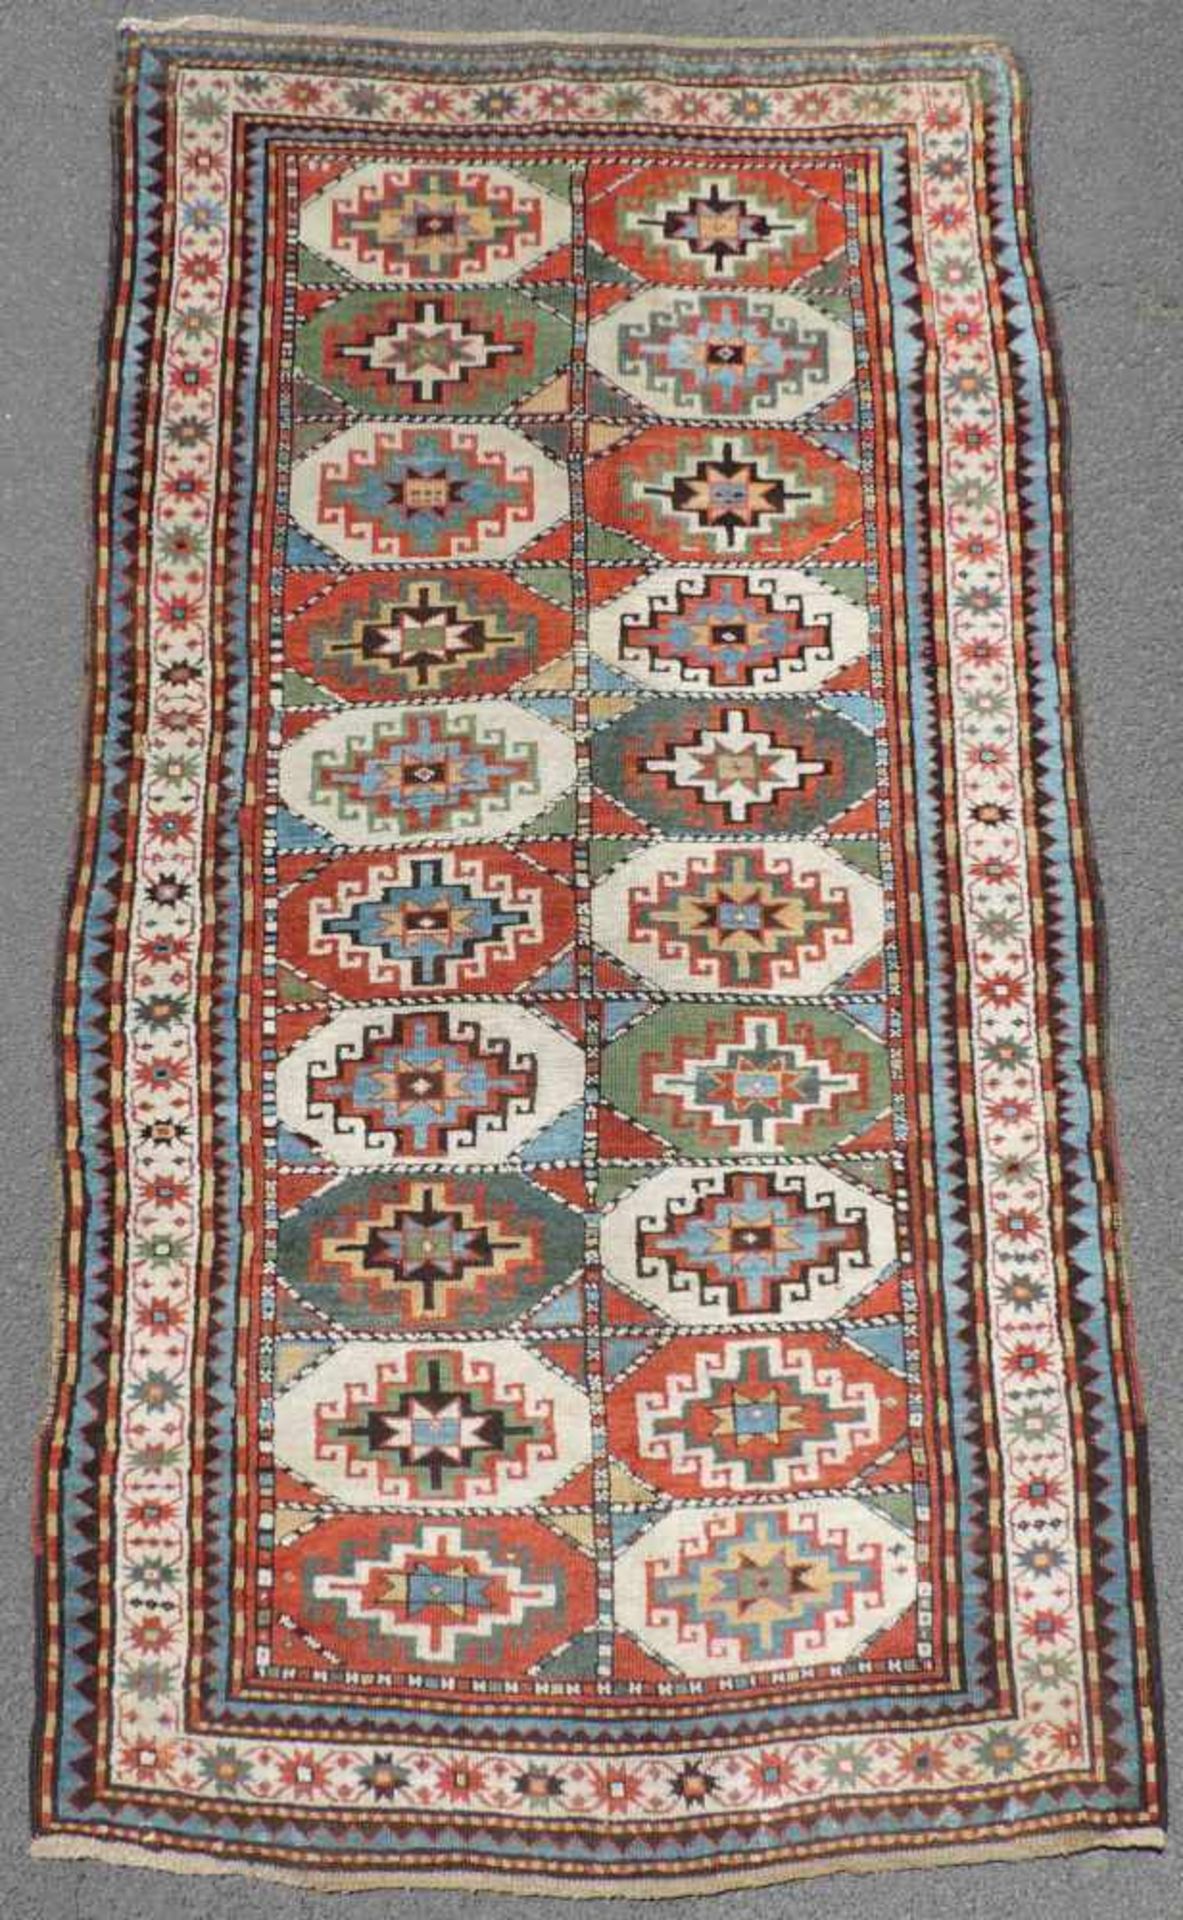 Karabagh Dorfteppich. Kaukasus. Antik, um 1880. 230 cm x 118 cm. Orientteppich. Handgeknüpft.